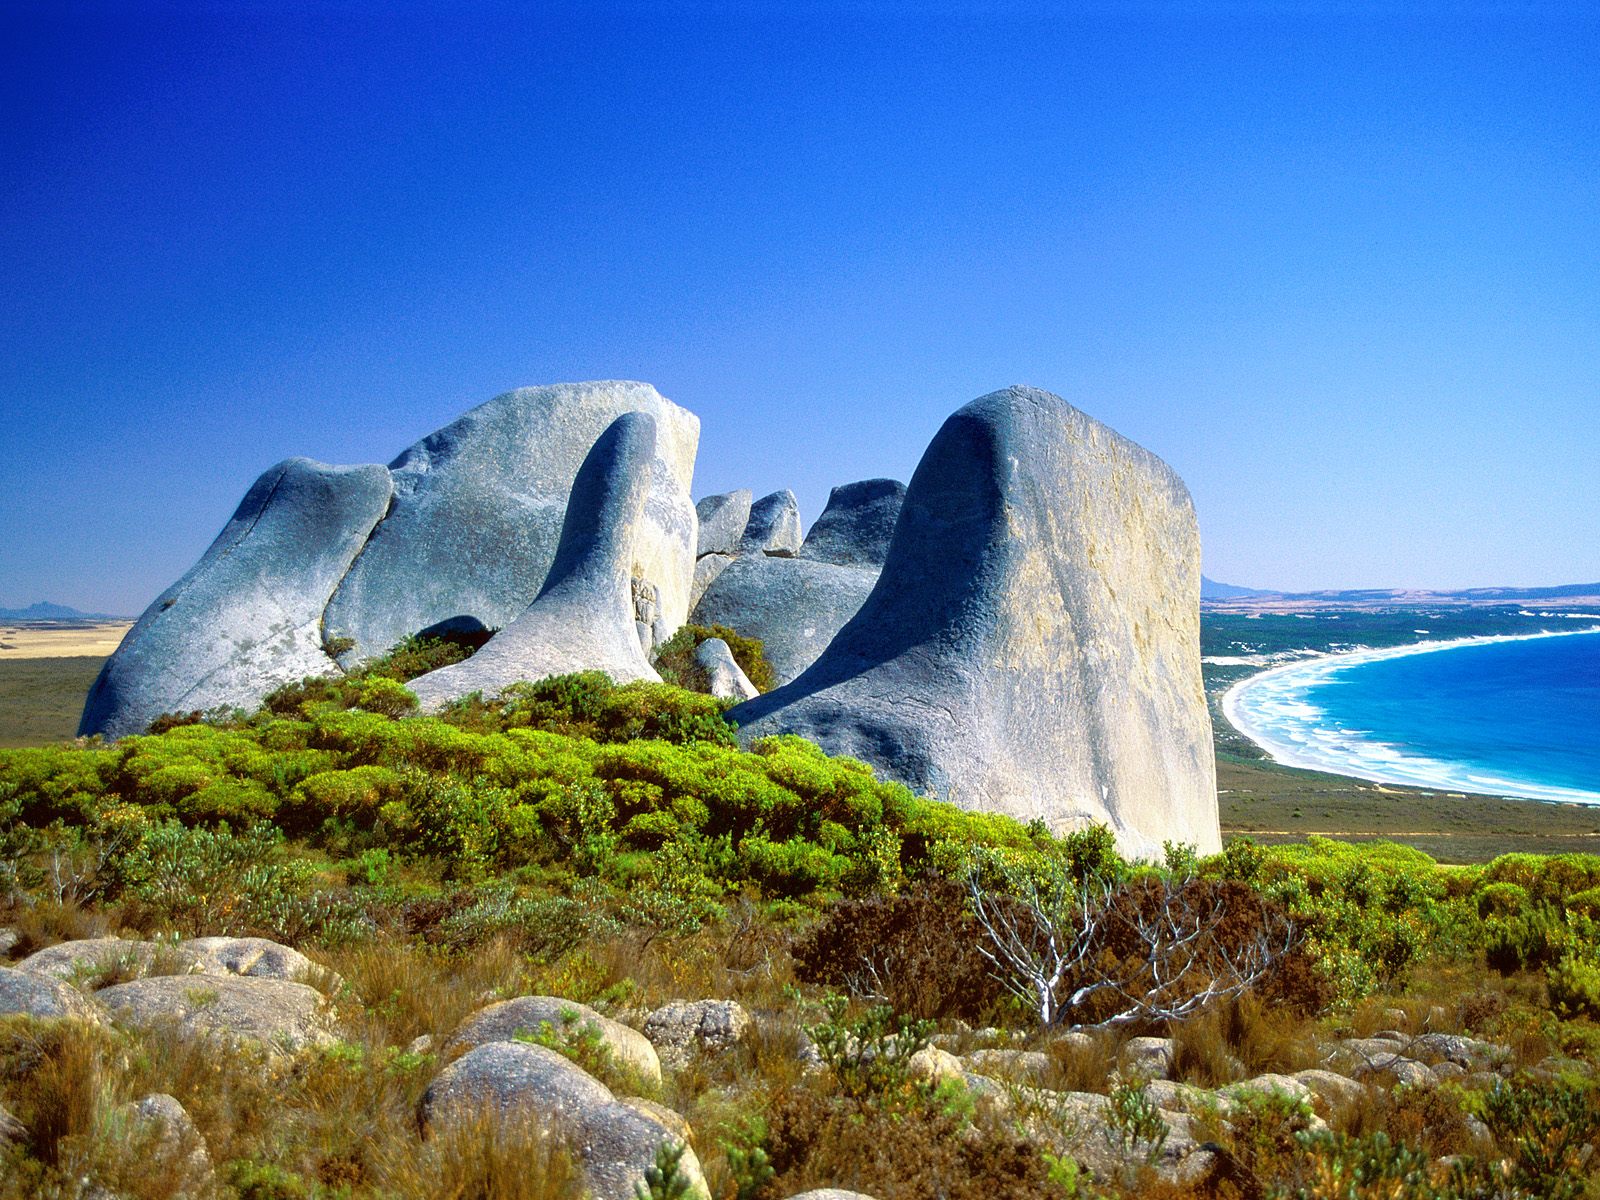  World - Australia - Eroded Granite / Cheynes Beach / Australia wallpaper